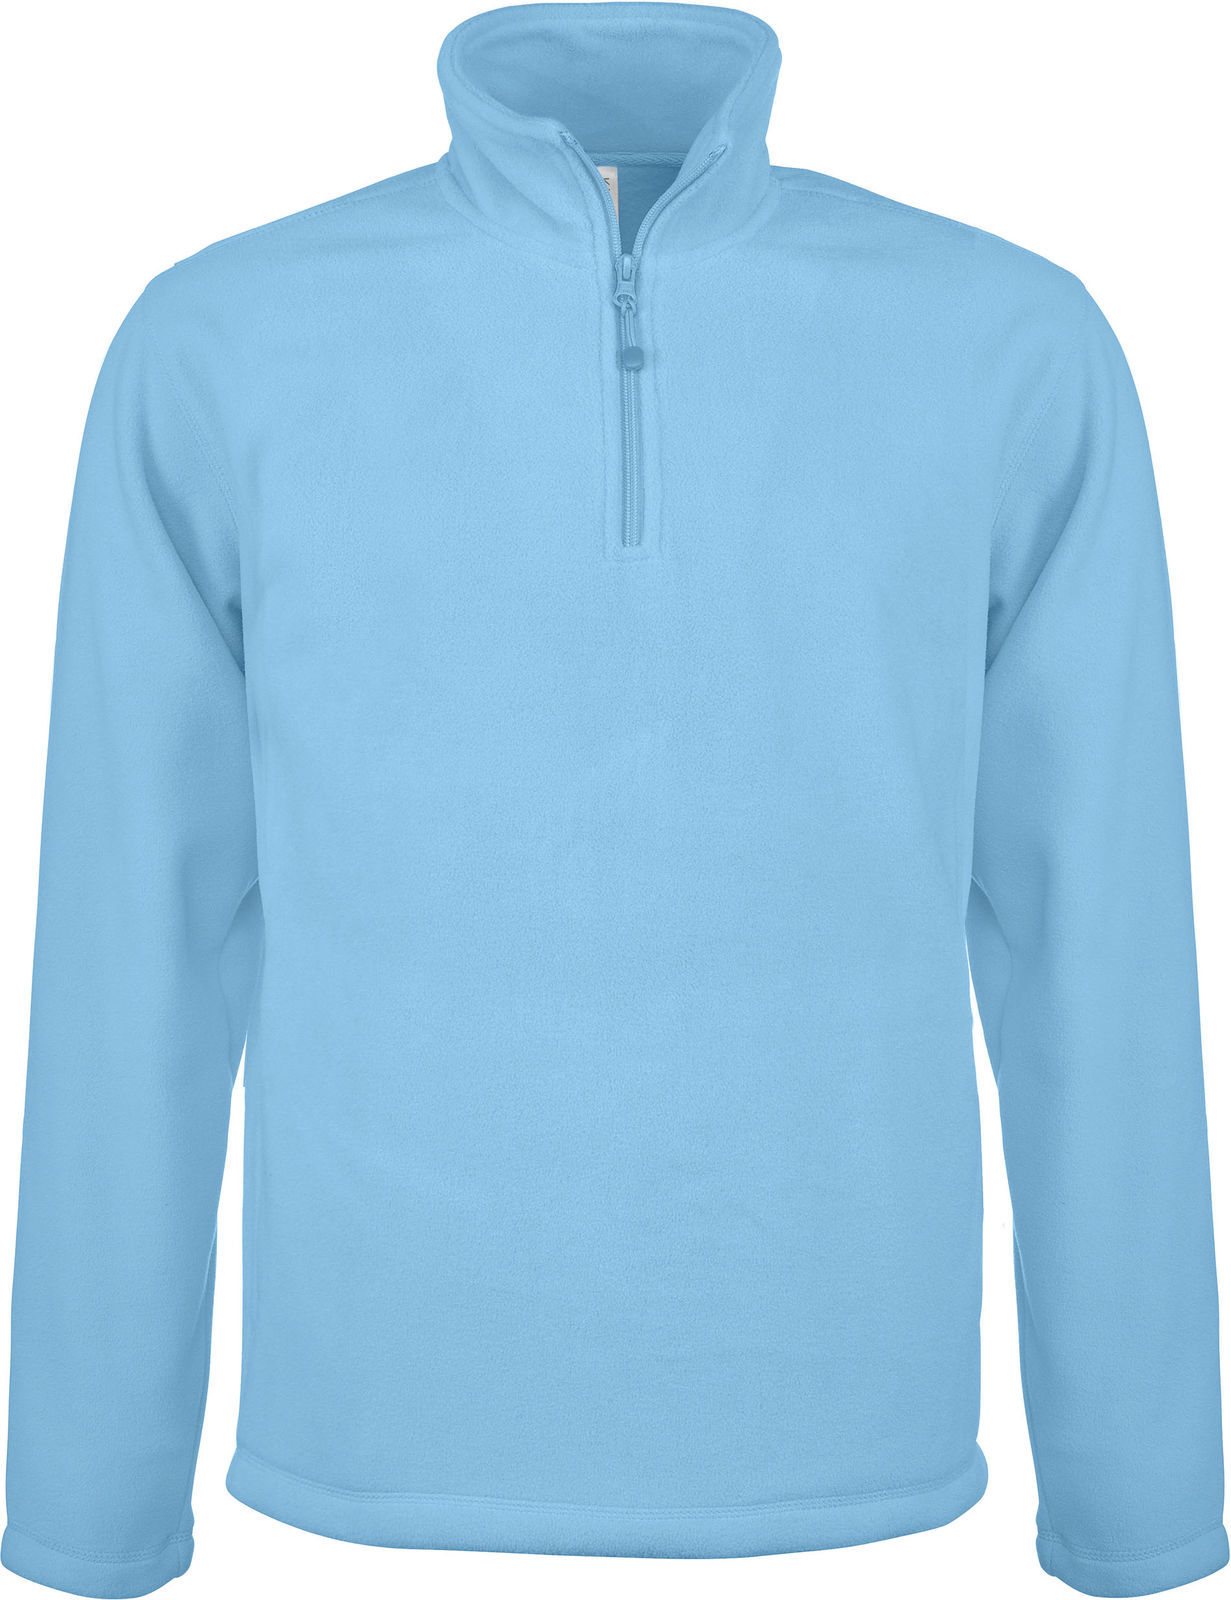 Sweat-shirt Pro 1/4 zip pour homme - Bleu